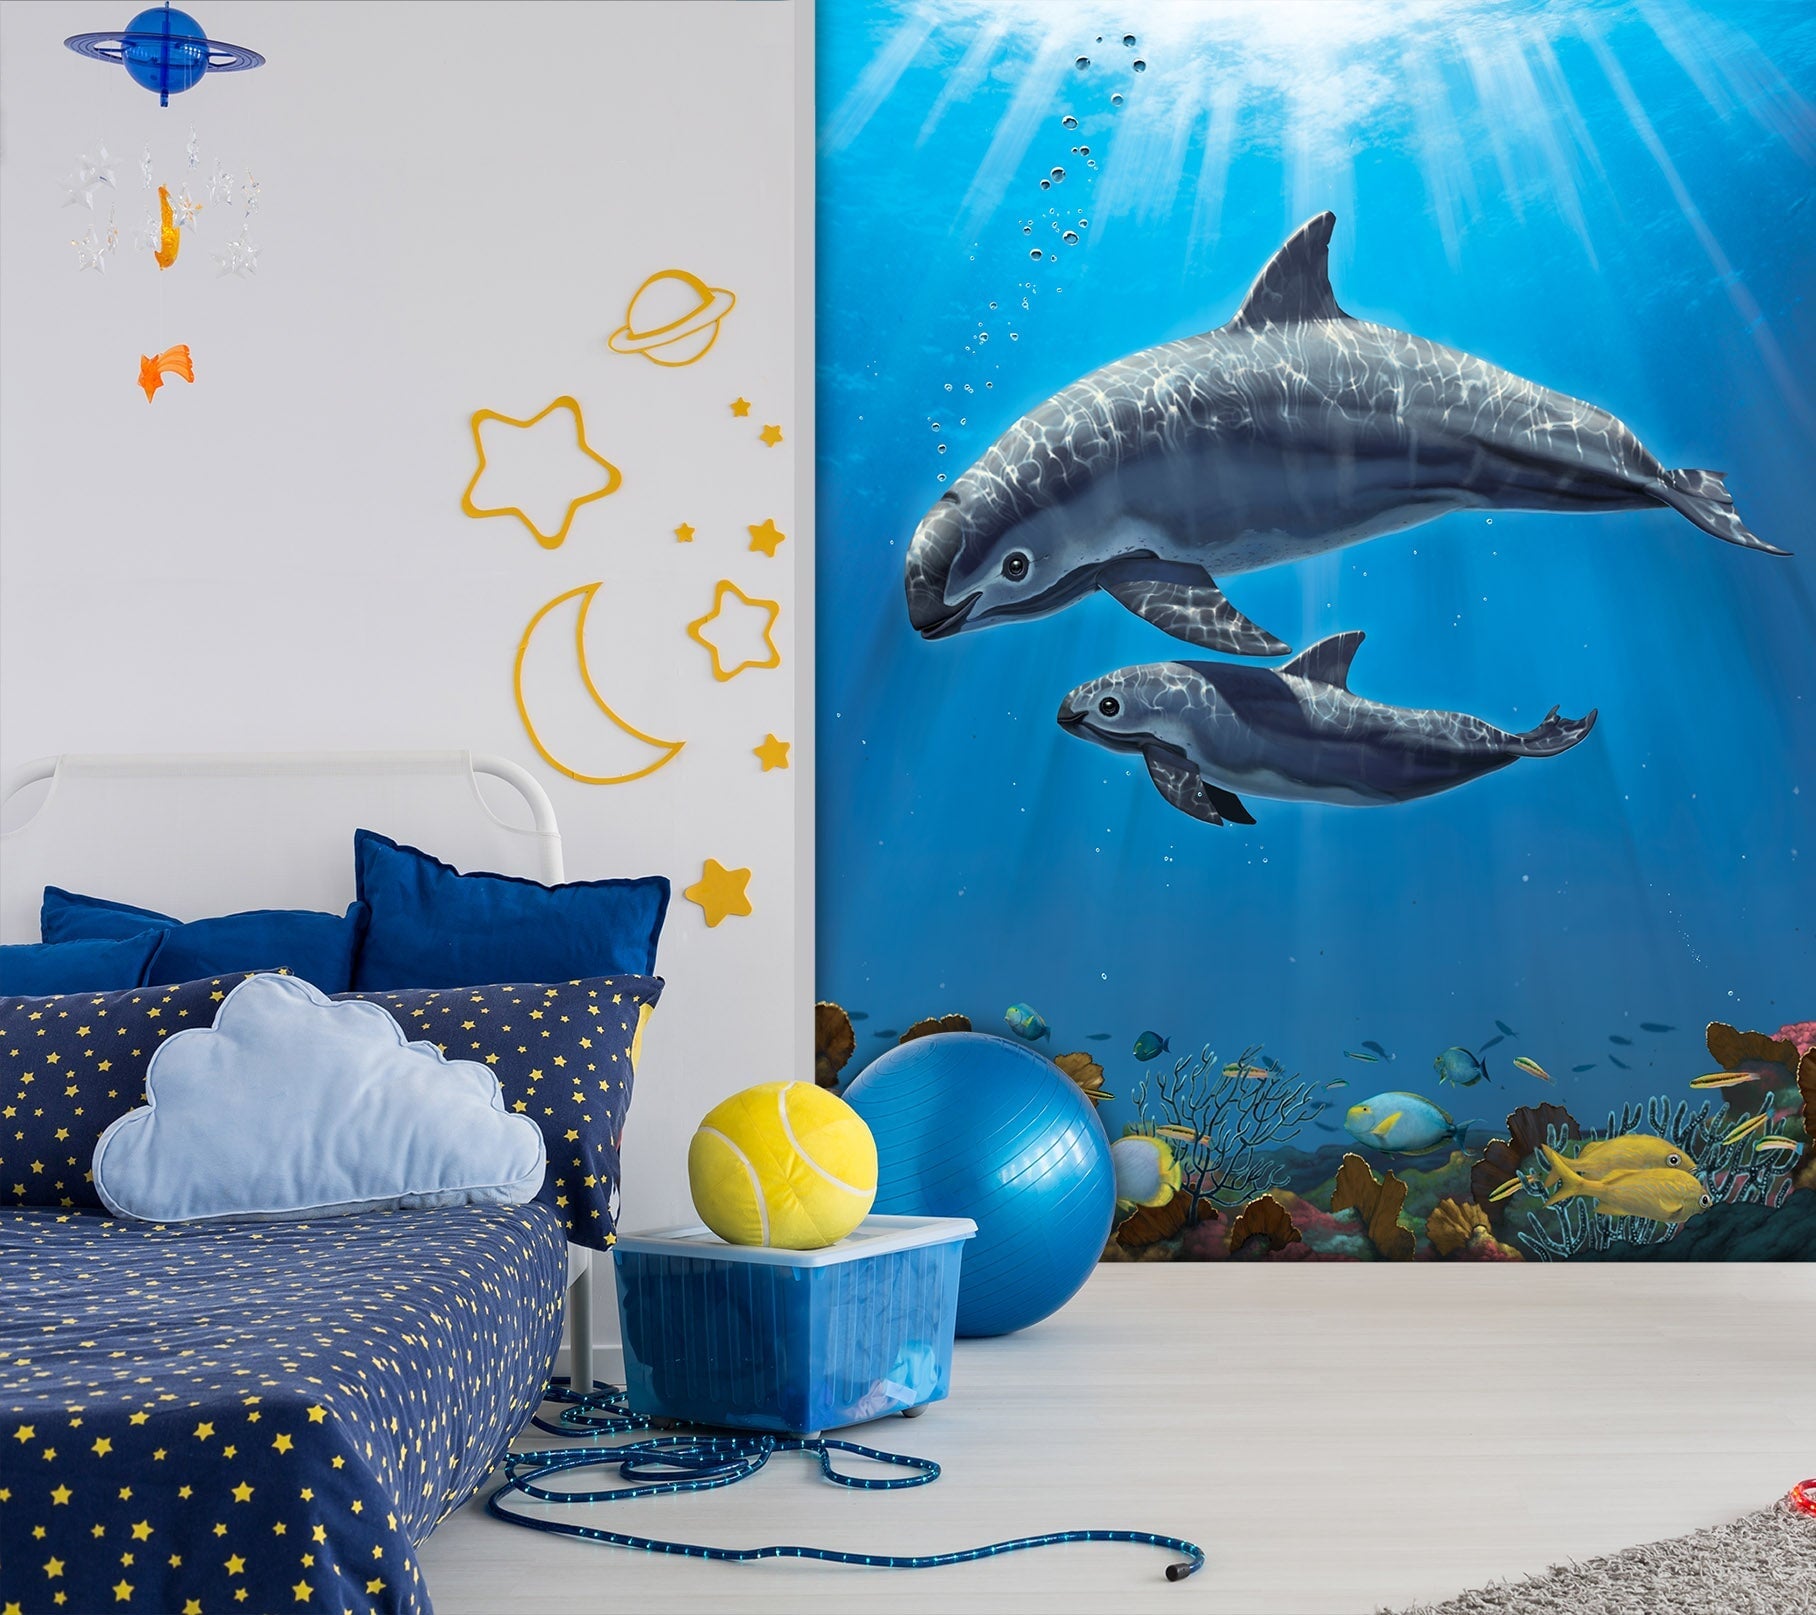 3D Dolphin Swimming 1568 Wall Murals Exclusive Designer Vincent Wallpaper AJ Wallpaper 